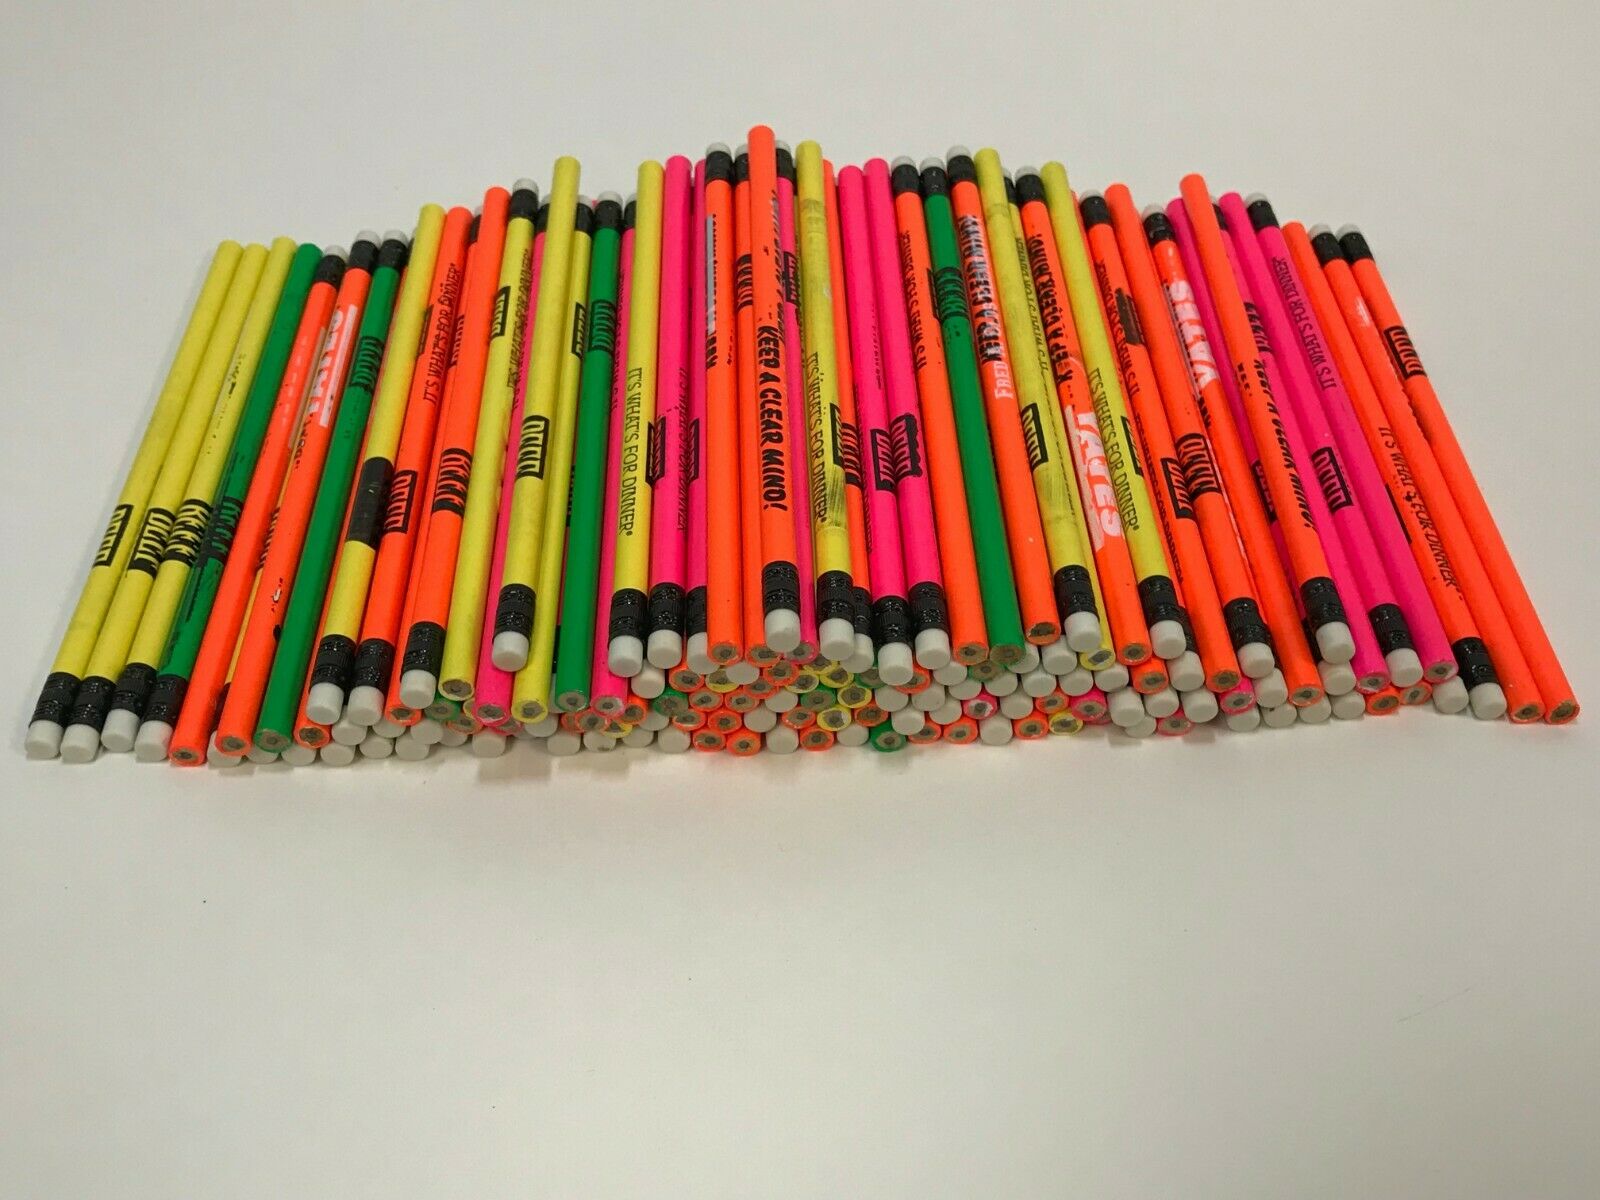 144 Lot Misprint Pencils With Vinyl Eraser #2 Lead, Bulk Wholesale Lot, 144 Ct